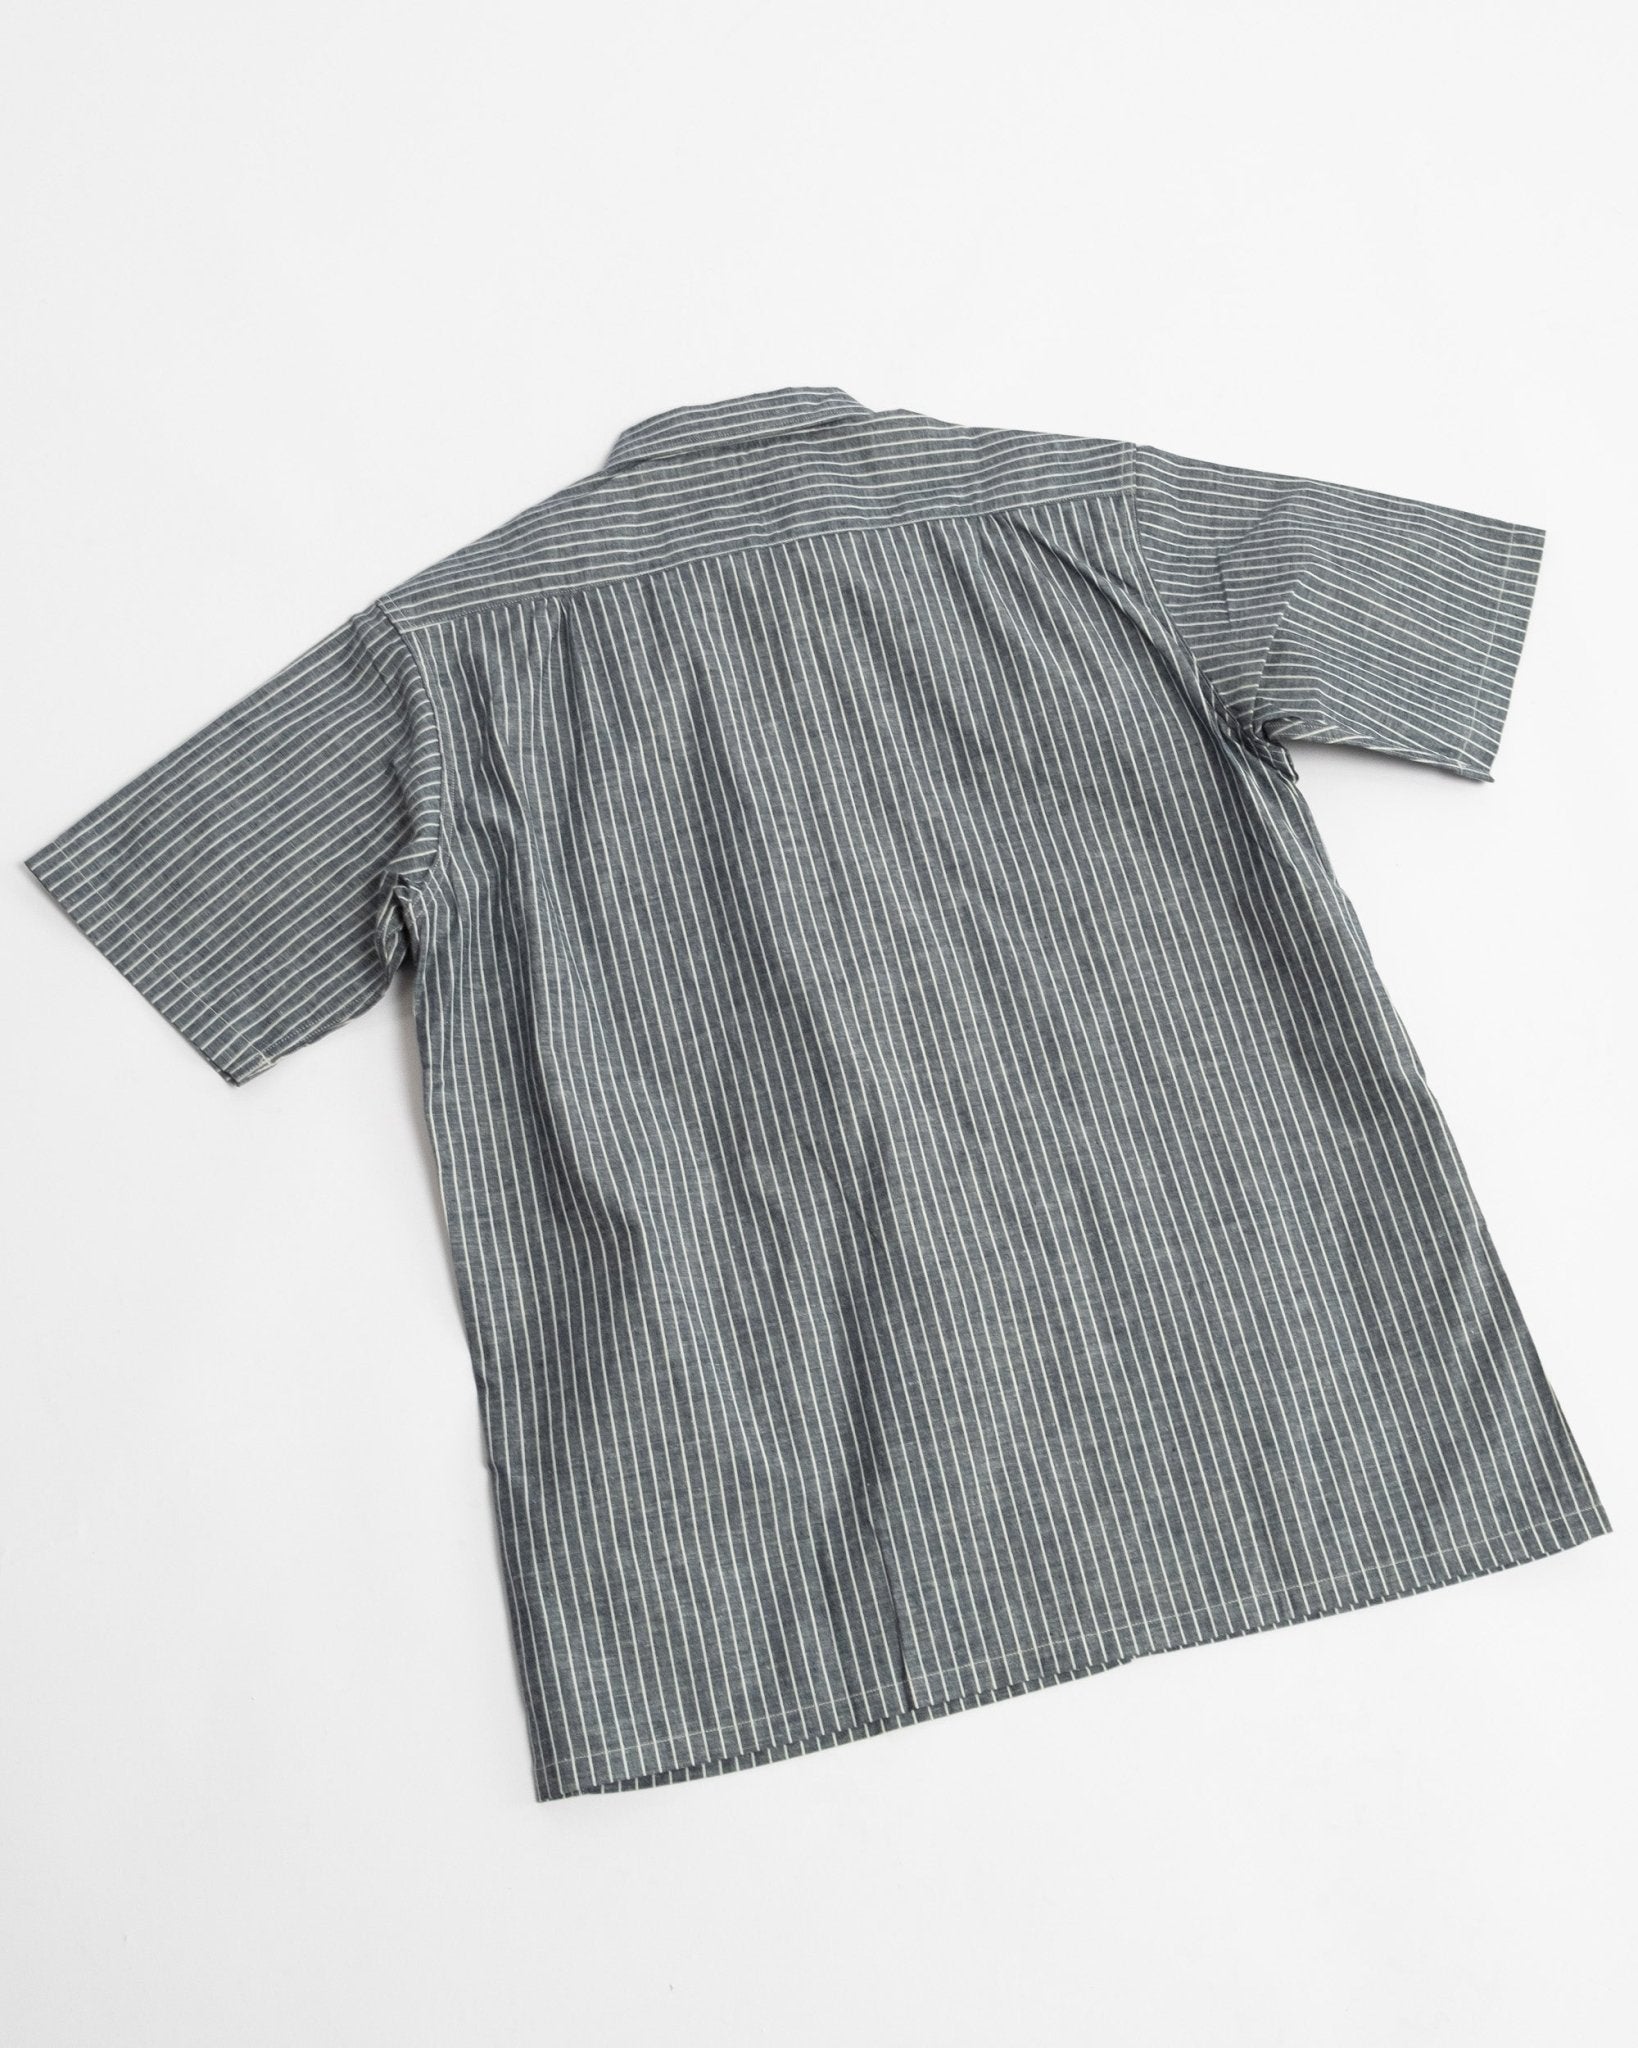 S/S Open Collar Shirt Indigo Stripe - Meadow